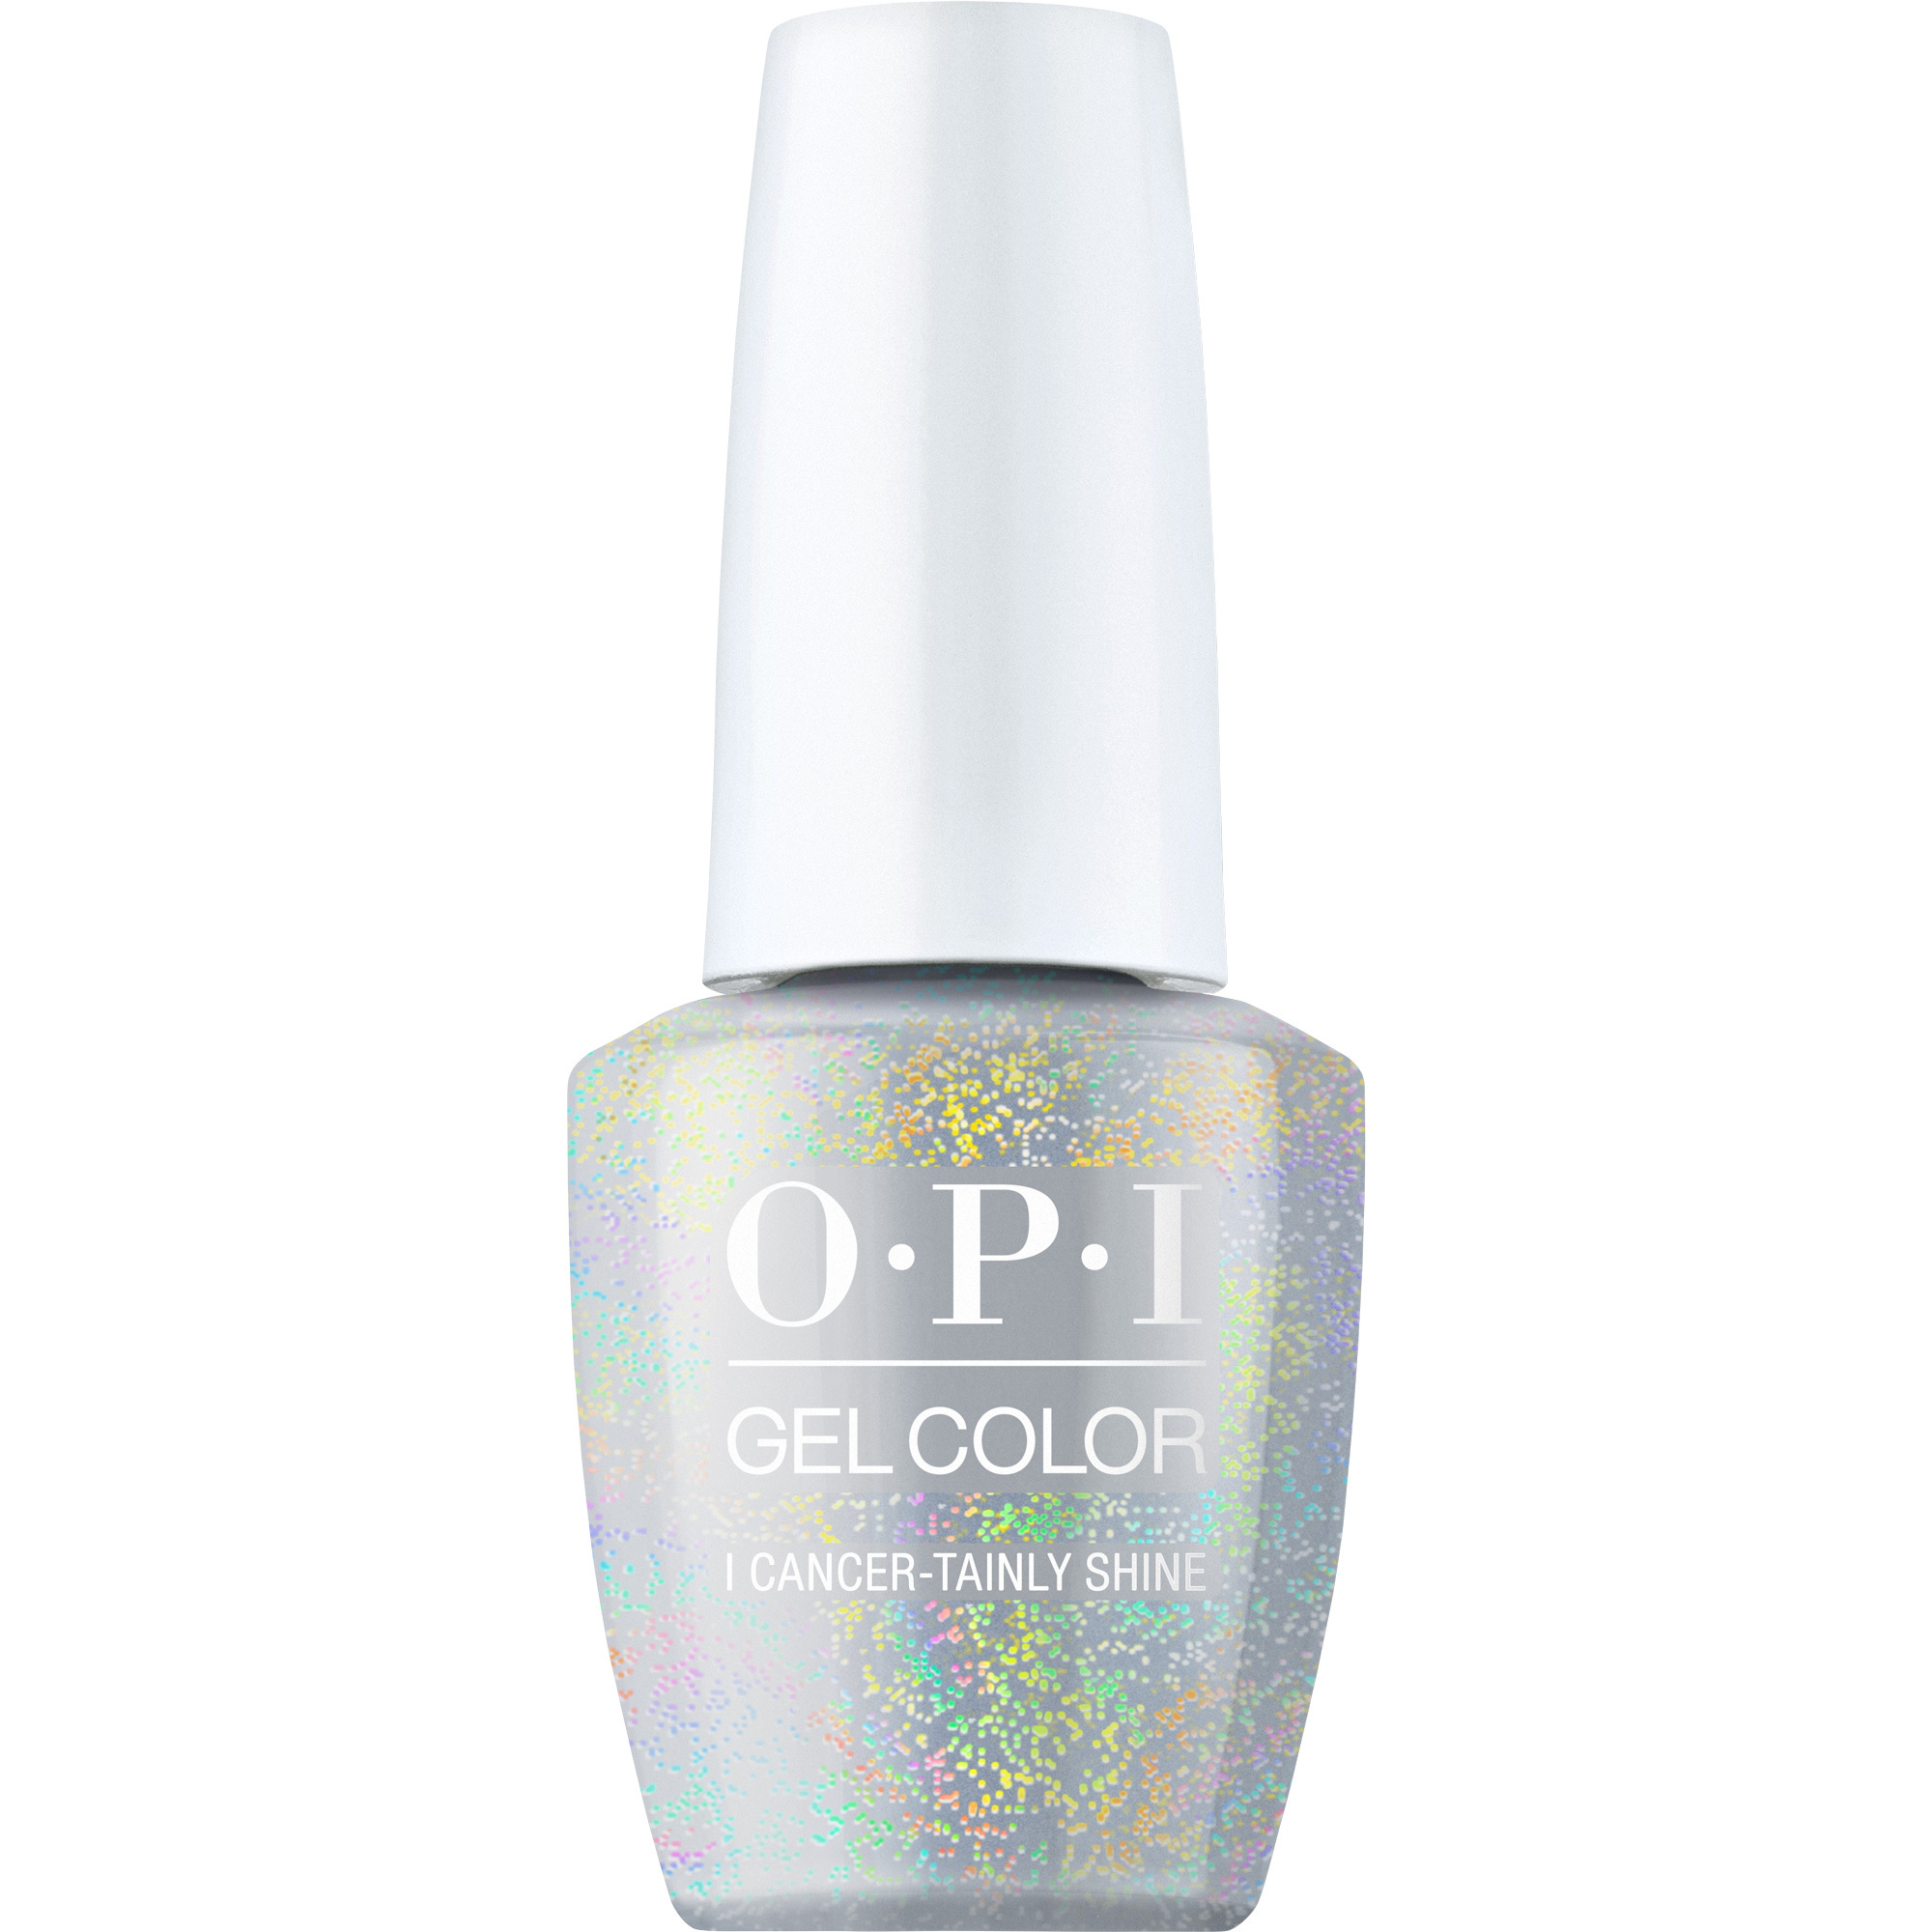 OPI Gel Color 360 - I Cancer-tainly Shine